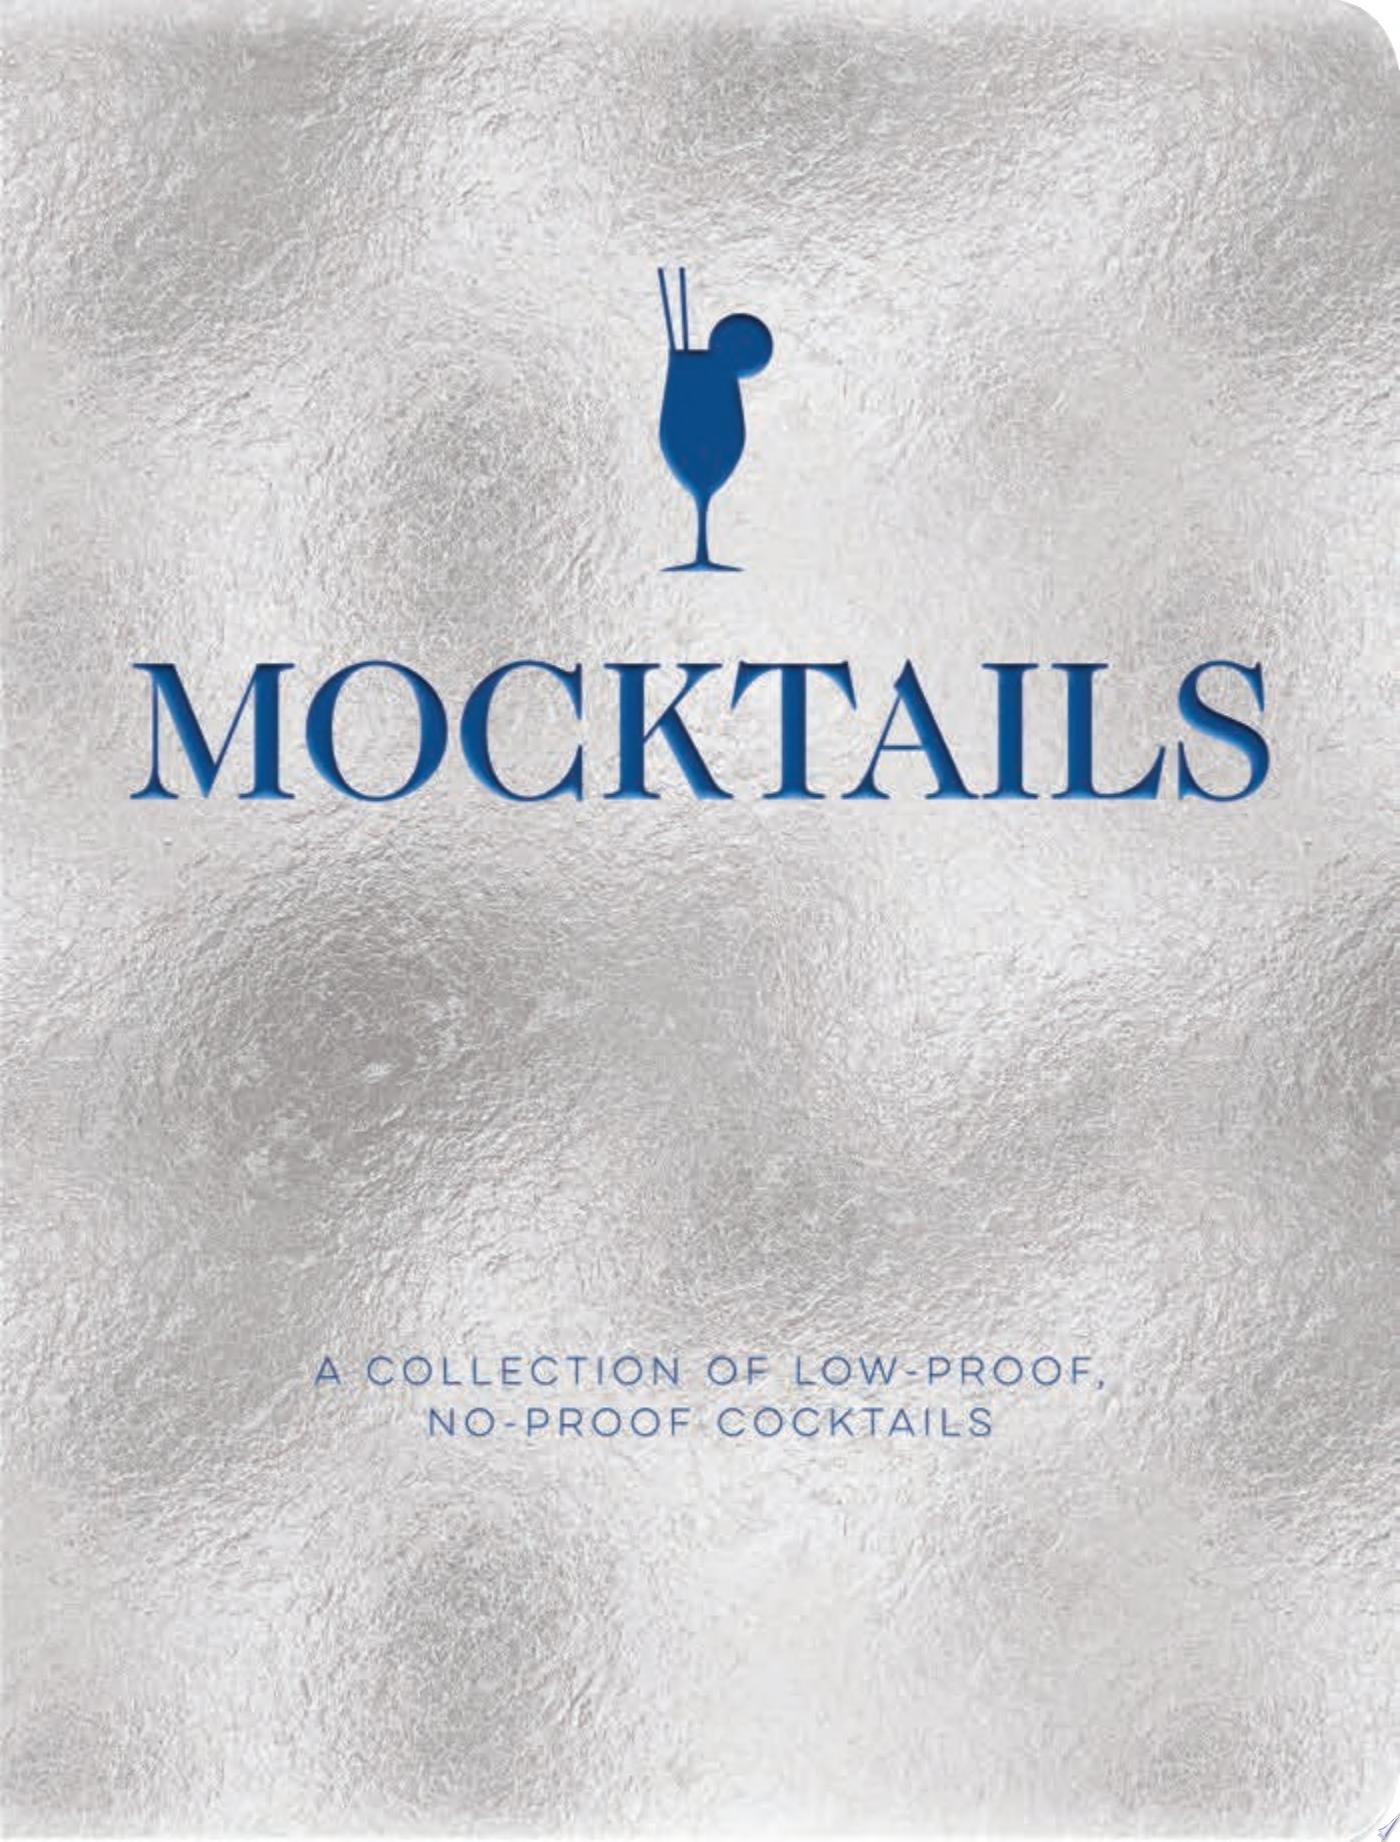 Image for "Mocktails"